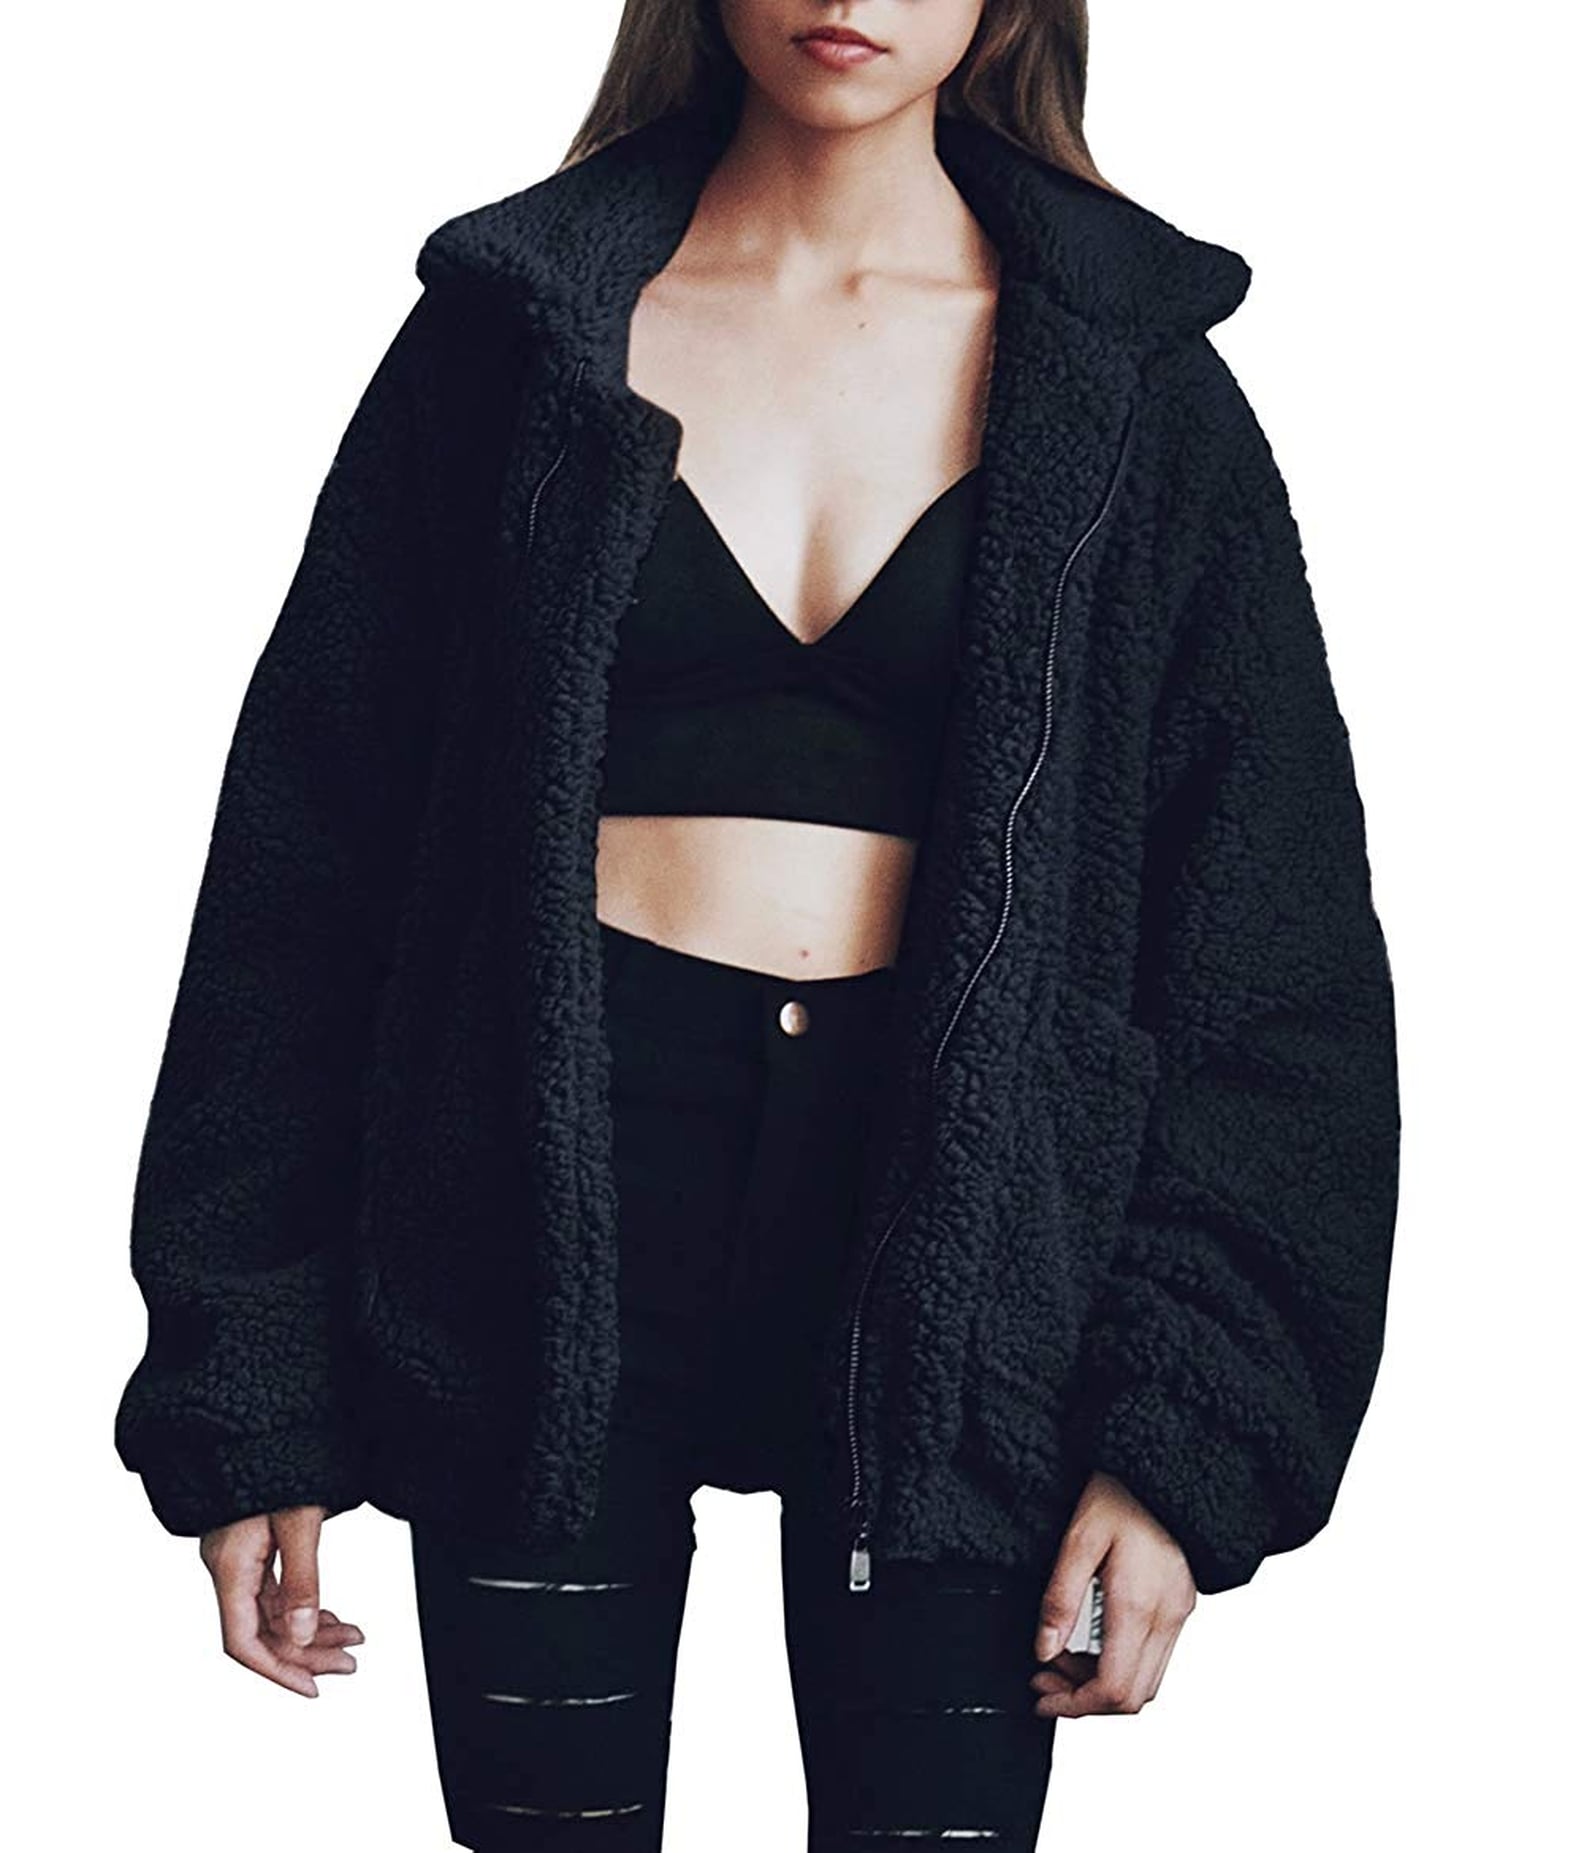 Popular Teddy Coat on Amazon Fashion | POPSUGAR Fashion